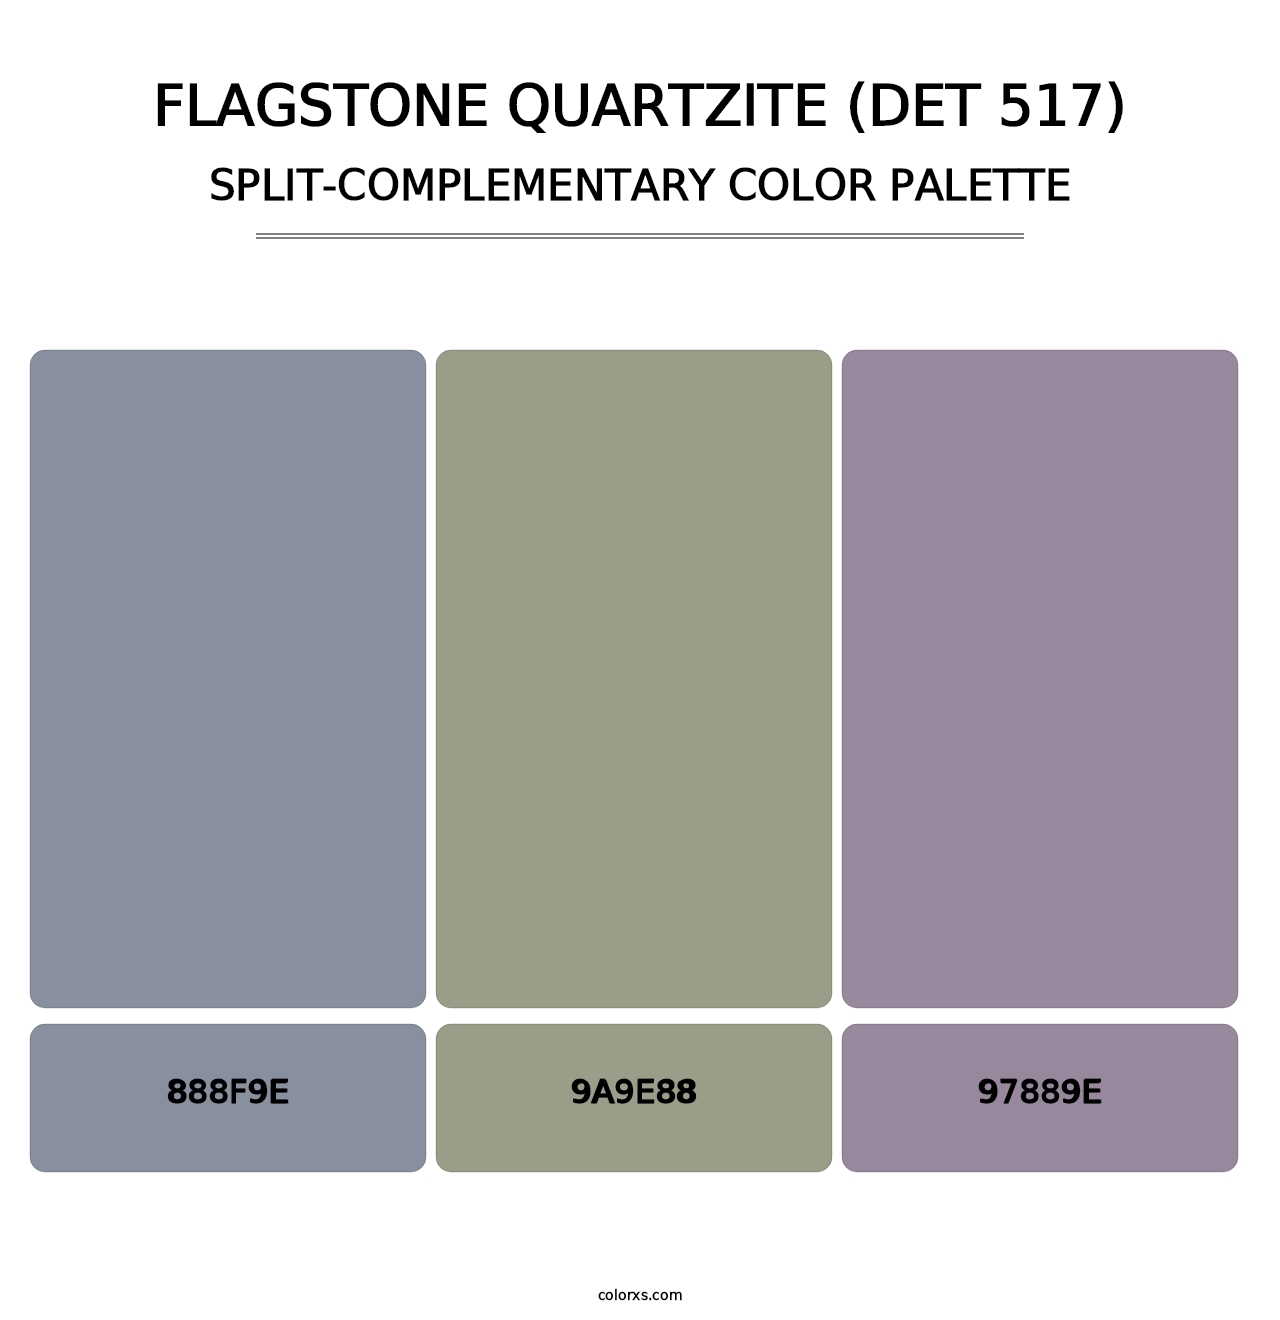 Flagstone Quartzite (DET 517) - Split-Complementary Color Palette